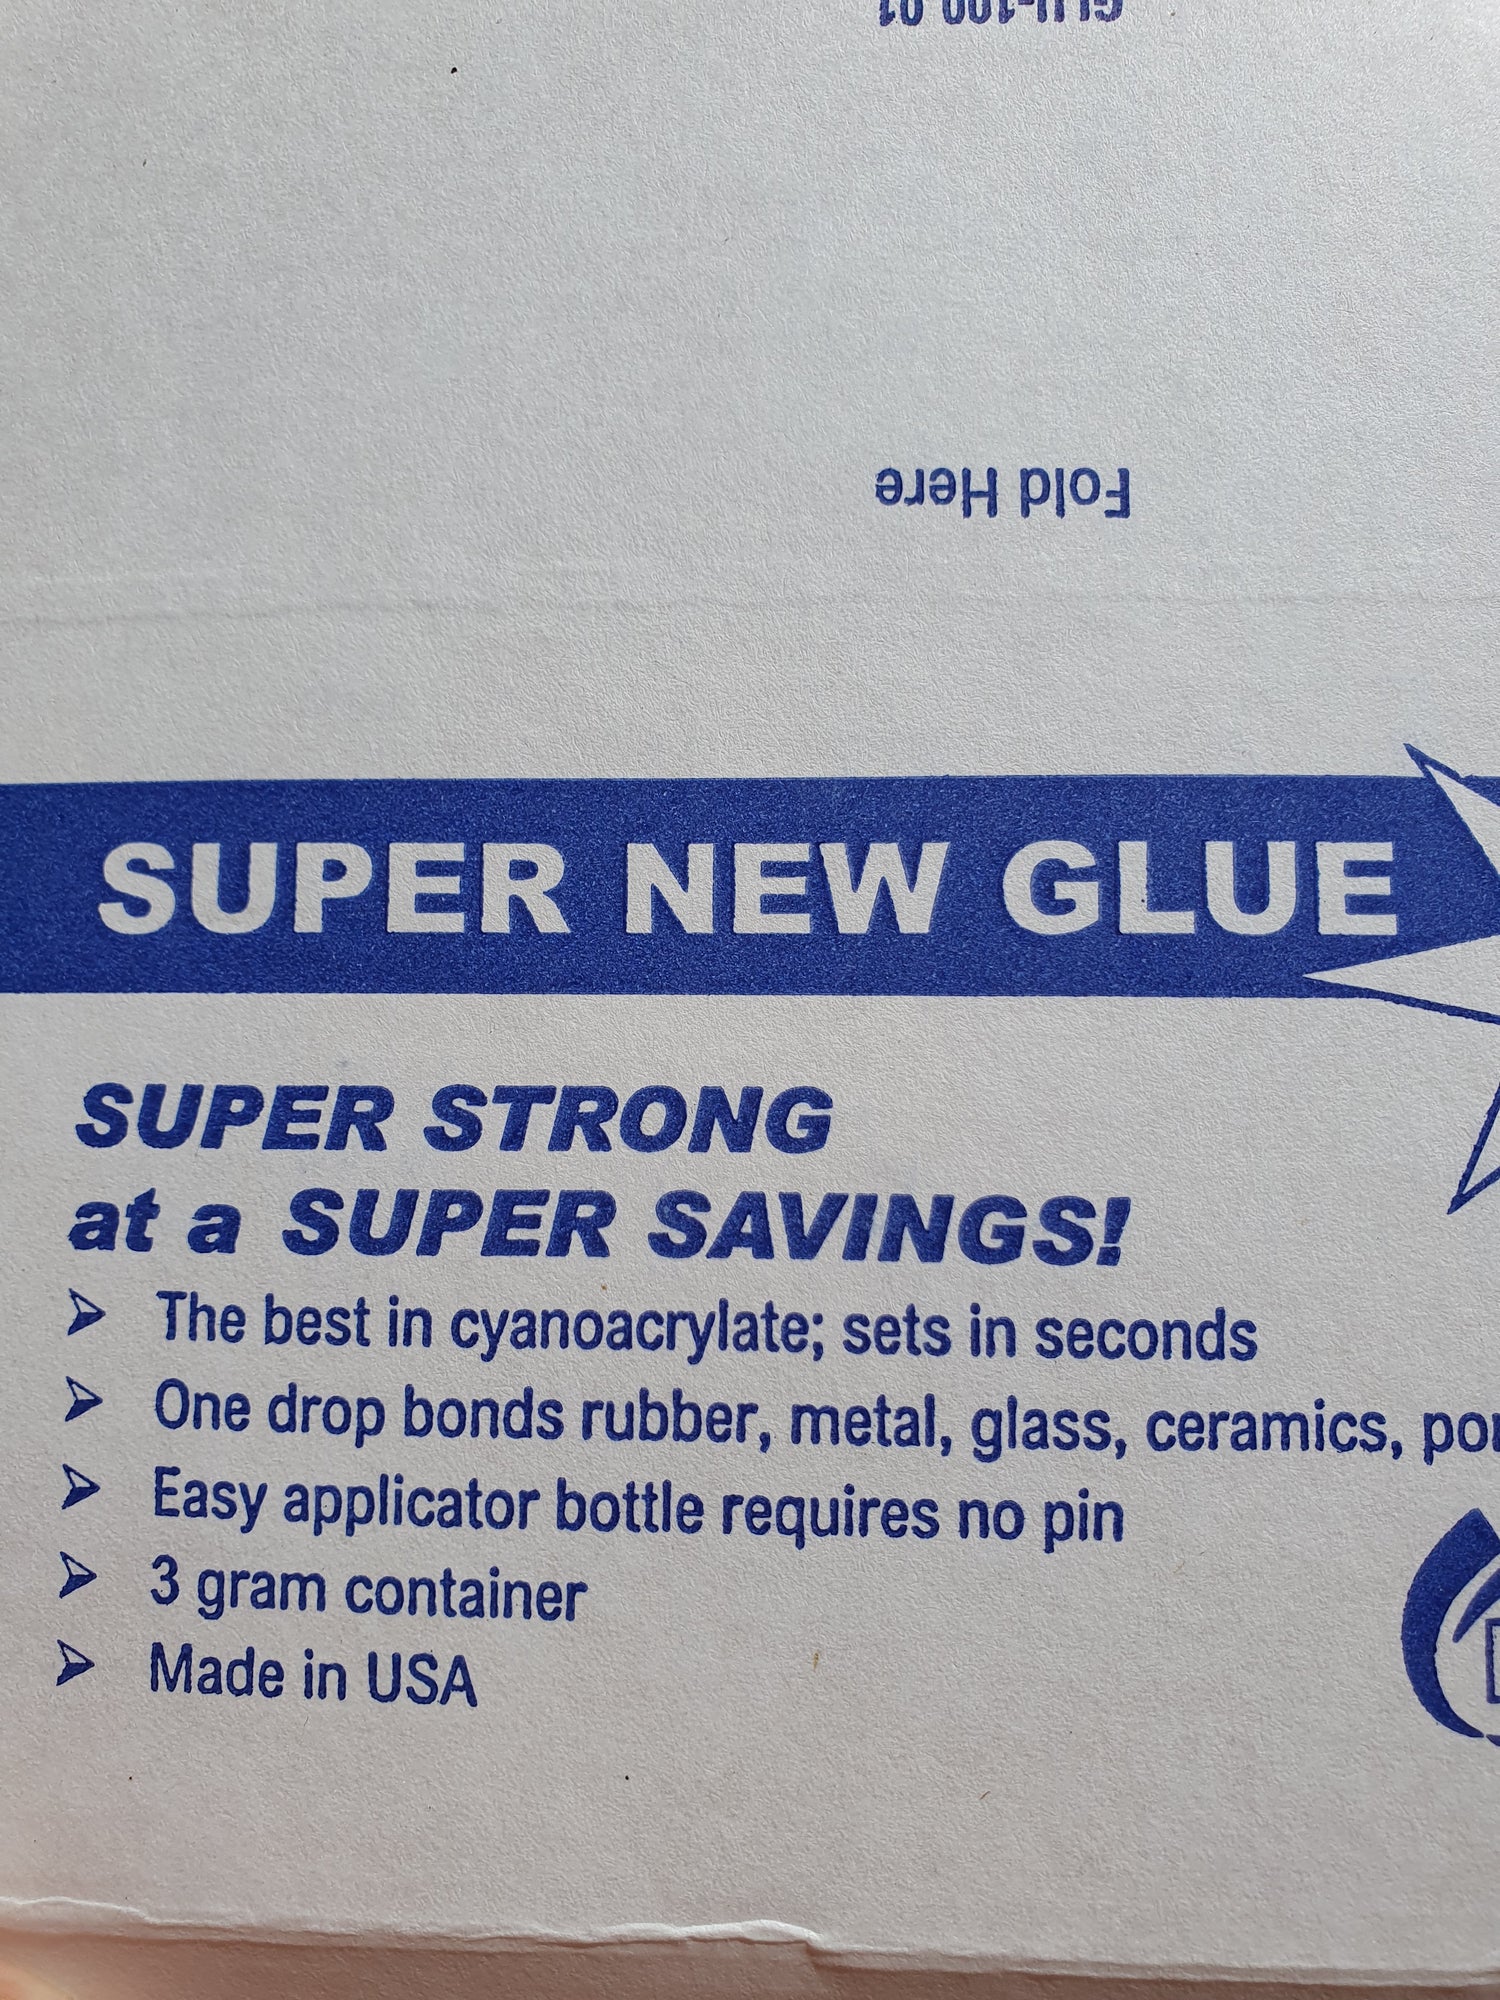 Super new glue Lijm